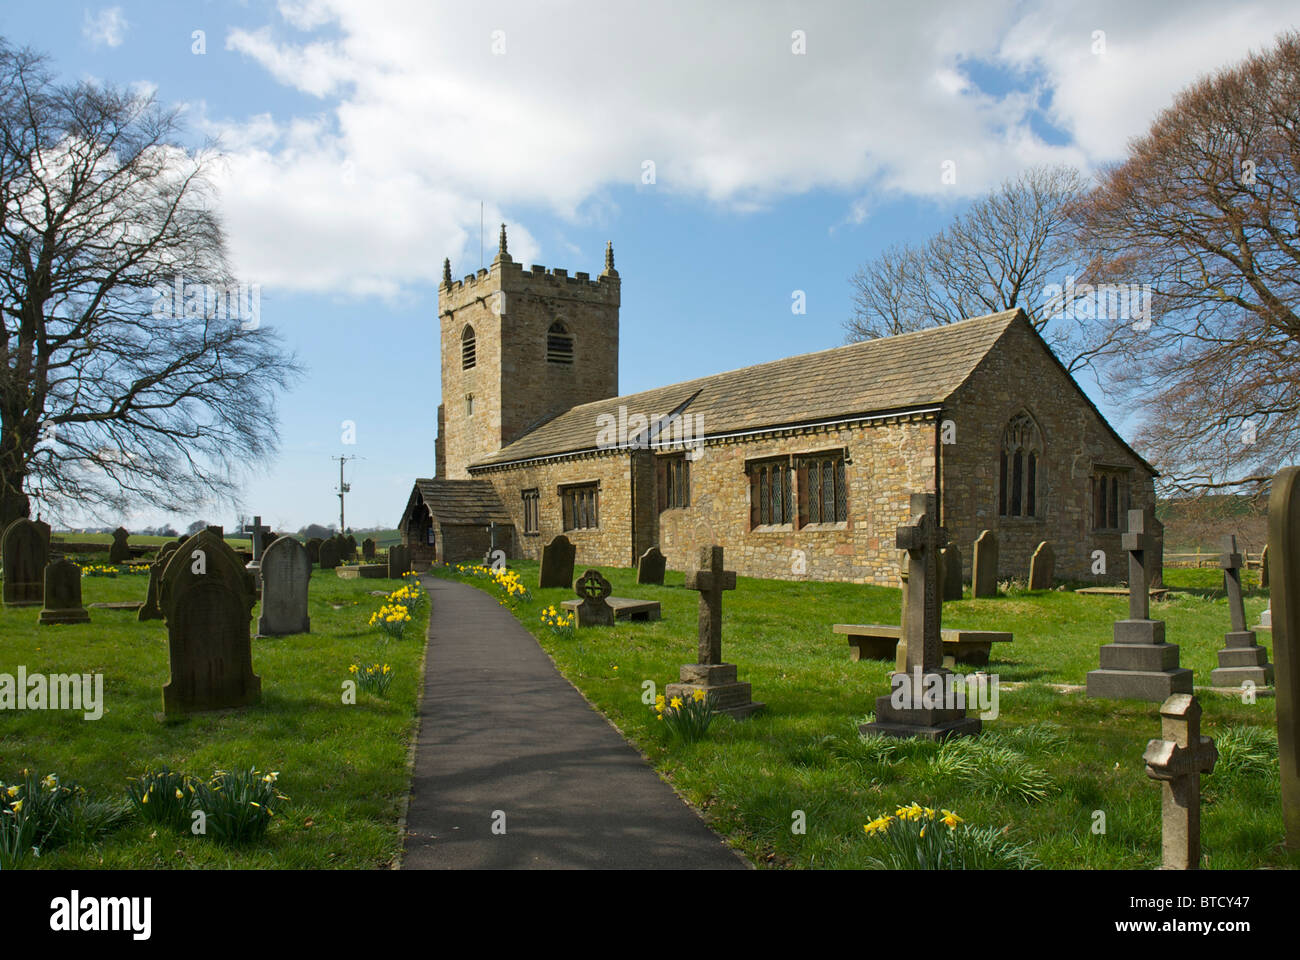 All Saints Church, desservant les paroisses de Broughton & Earby, près de Skipton, Yorkshire du Nord, Angleterre, Royaume-Uni Banque D'Images